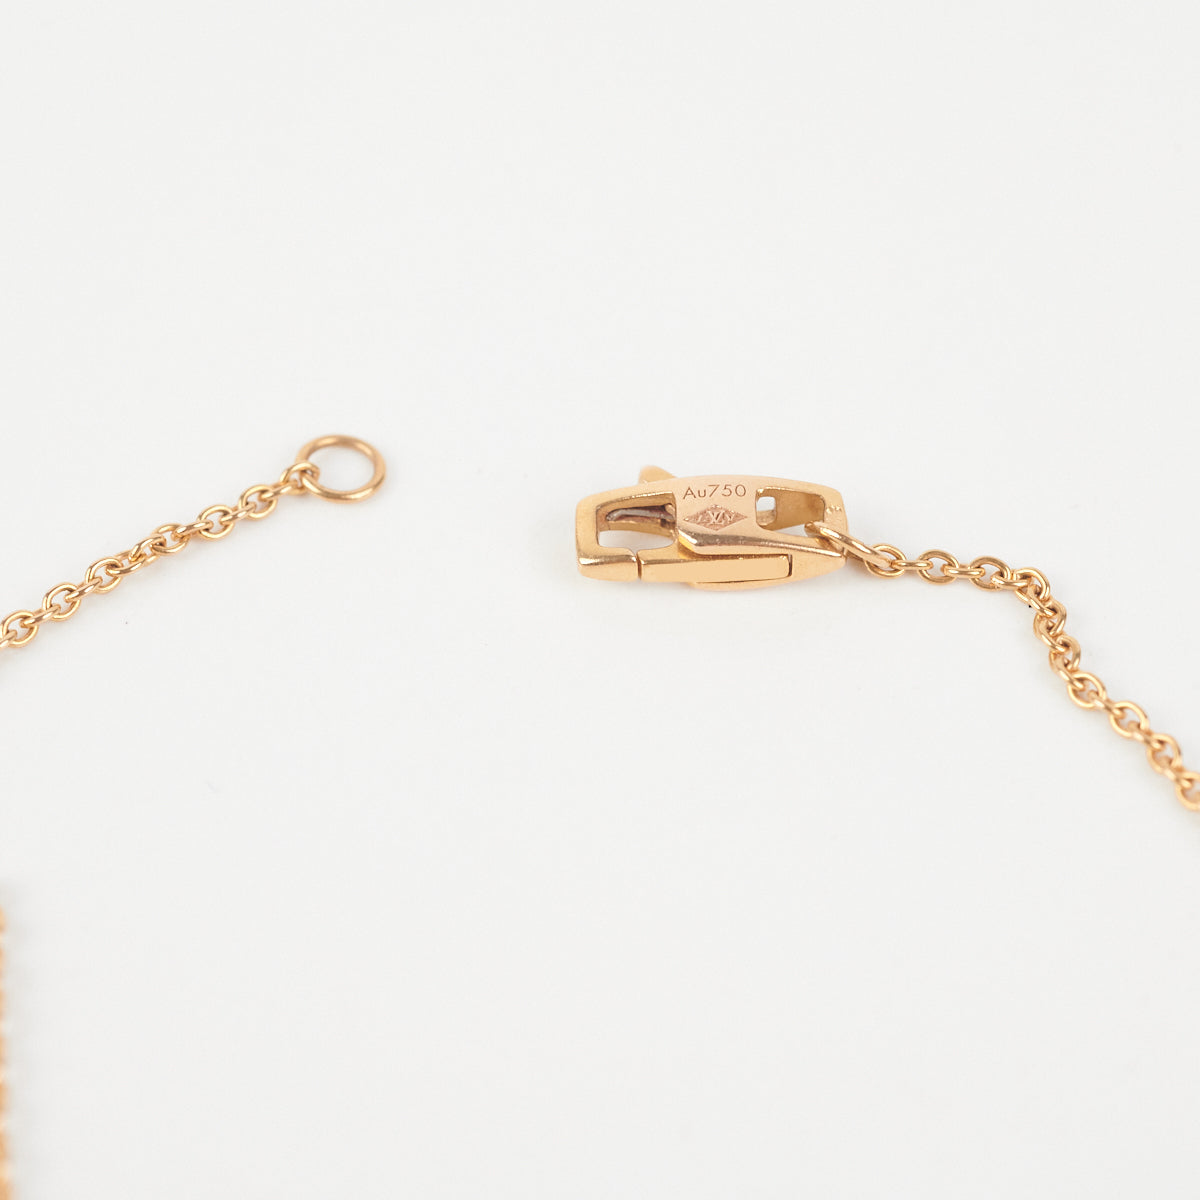 Louis Vuitton 18k Yellow Gold Empreinte Pendant Necklace – I MISS YOU  VINTAGE